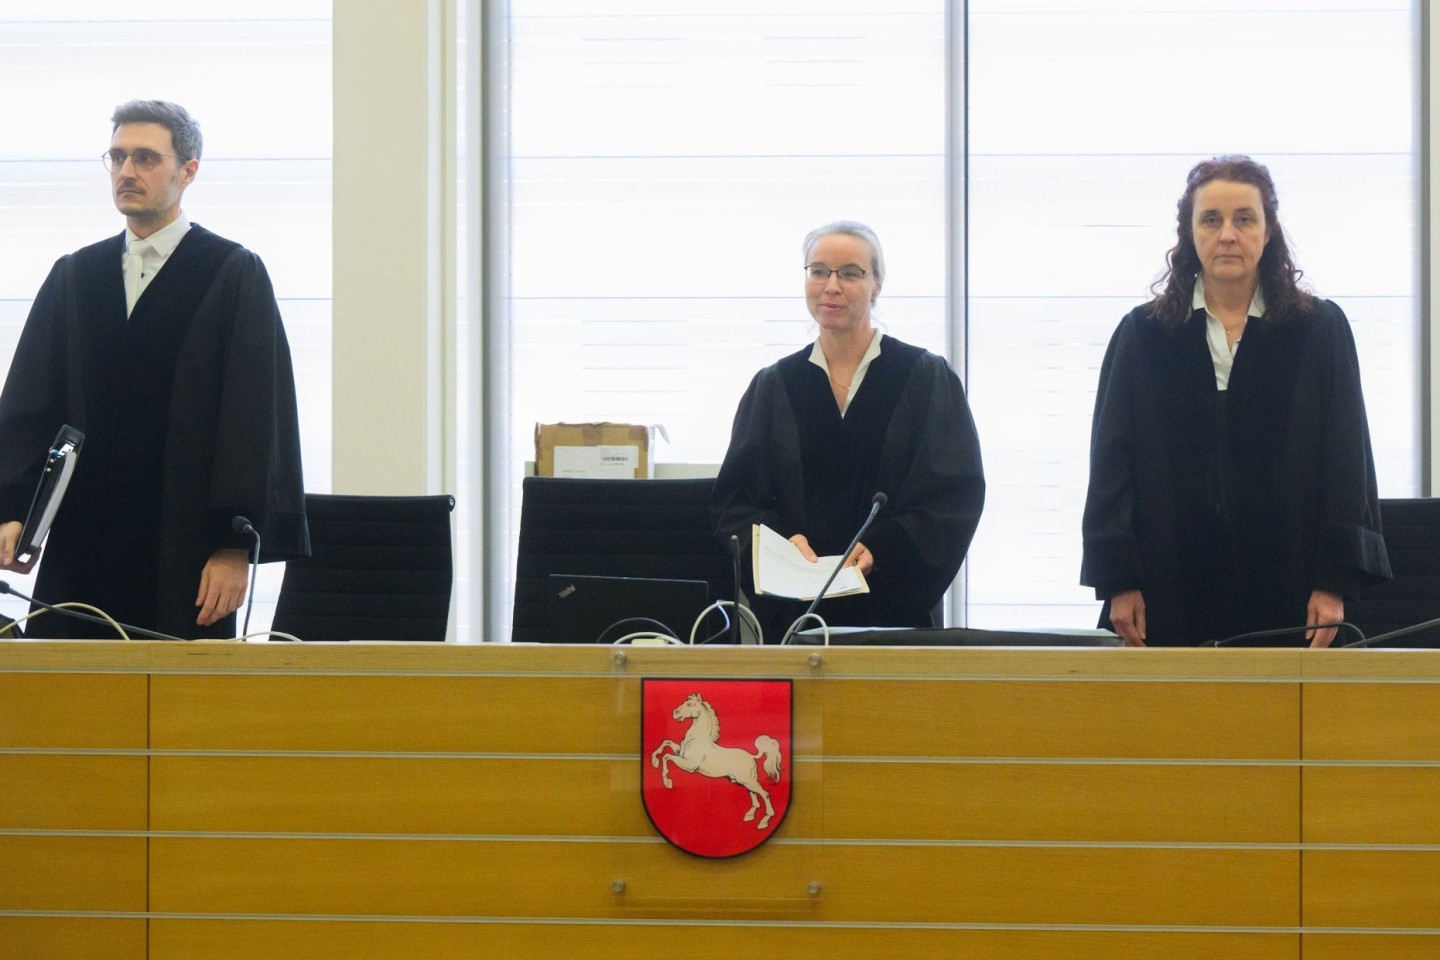 Die vorsitzende Richterin Uta Engemann (M.) mit den Richtern Timo Schmidt (l.) und Anke Hesse (r) zu Prozessbeginn im Gerichtssaal.